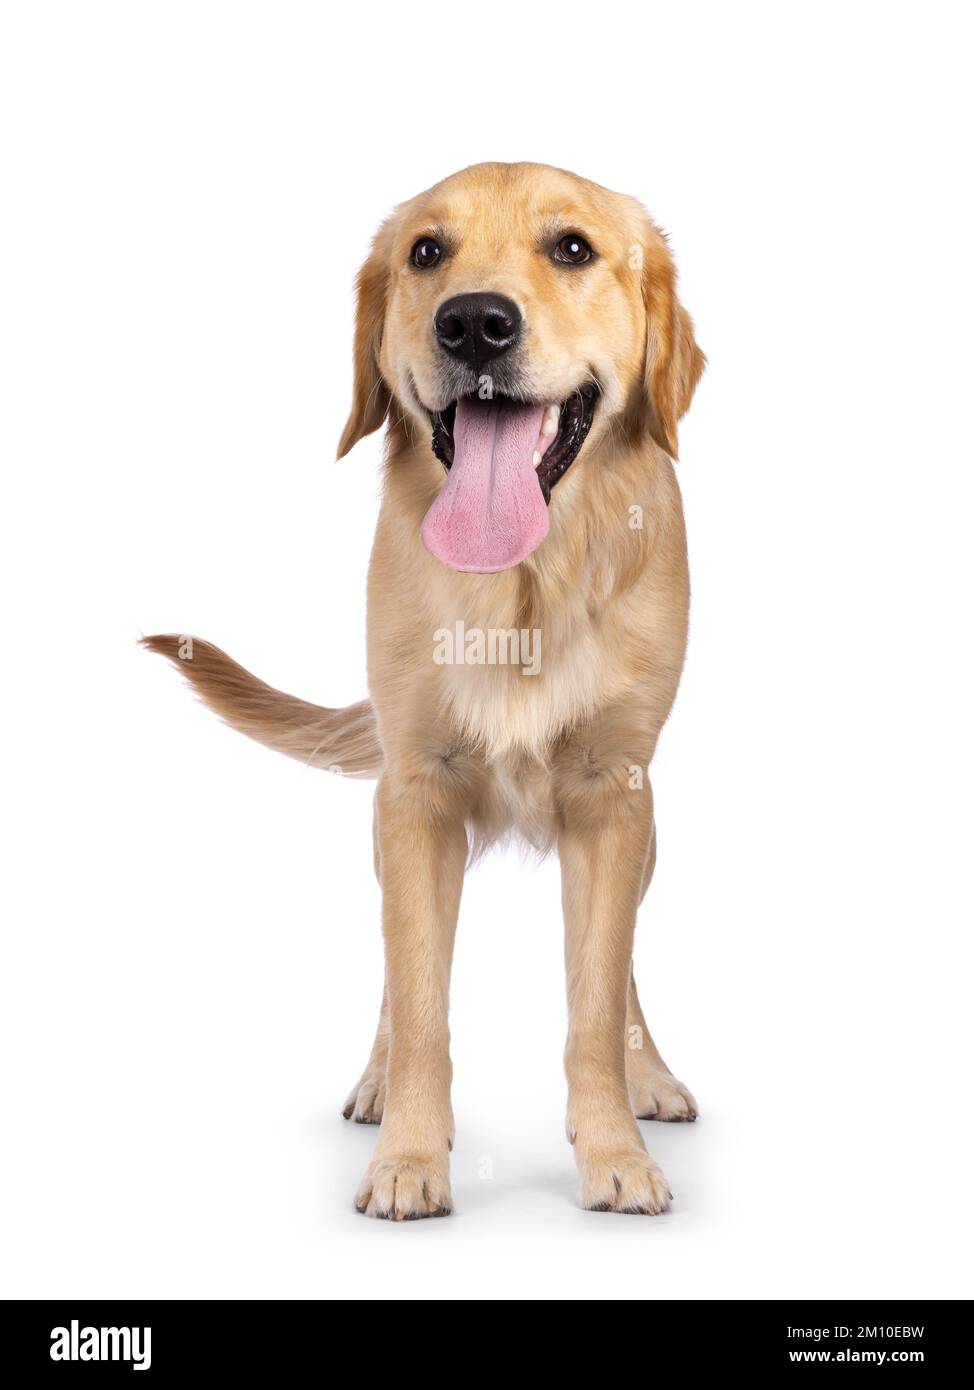 Jeune chien adulte Golden Retriever, debout face à l'avant avec une longue langue vers l'extérieur. En regardant vers l'appareil photo. Isolé sur un fond blanc. Banque D'Images